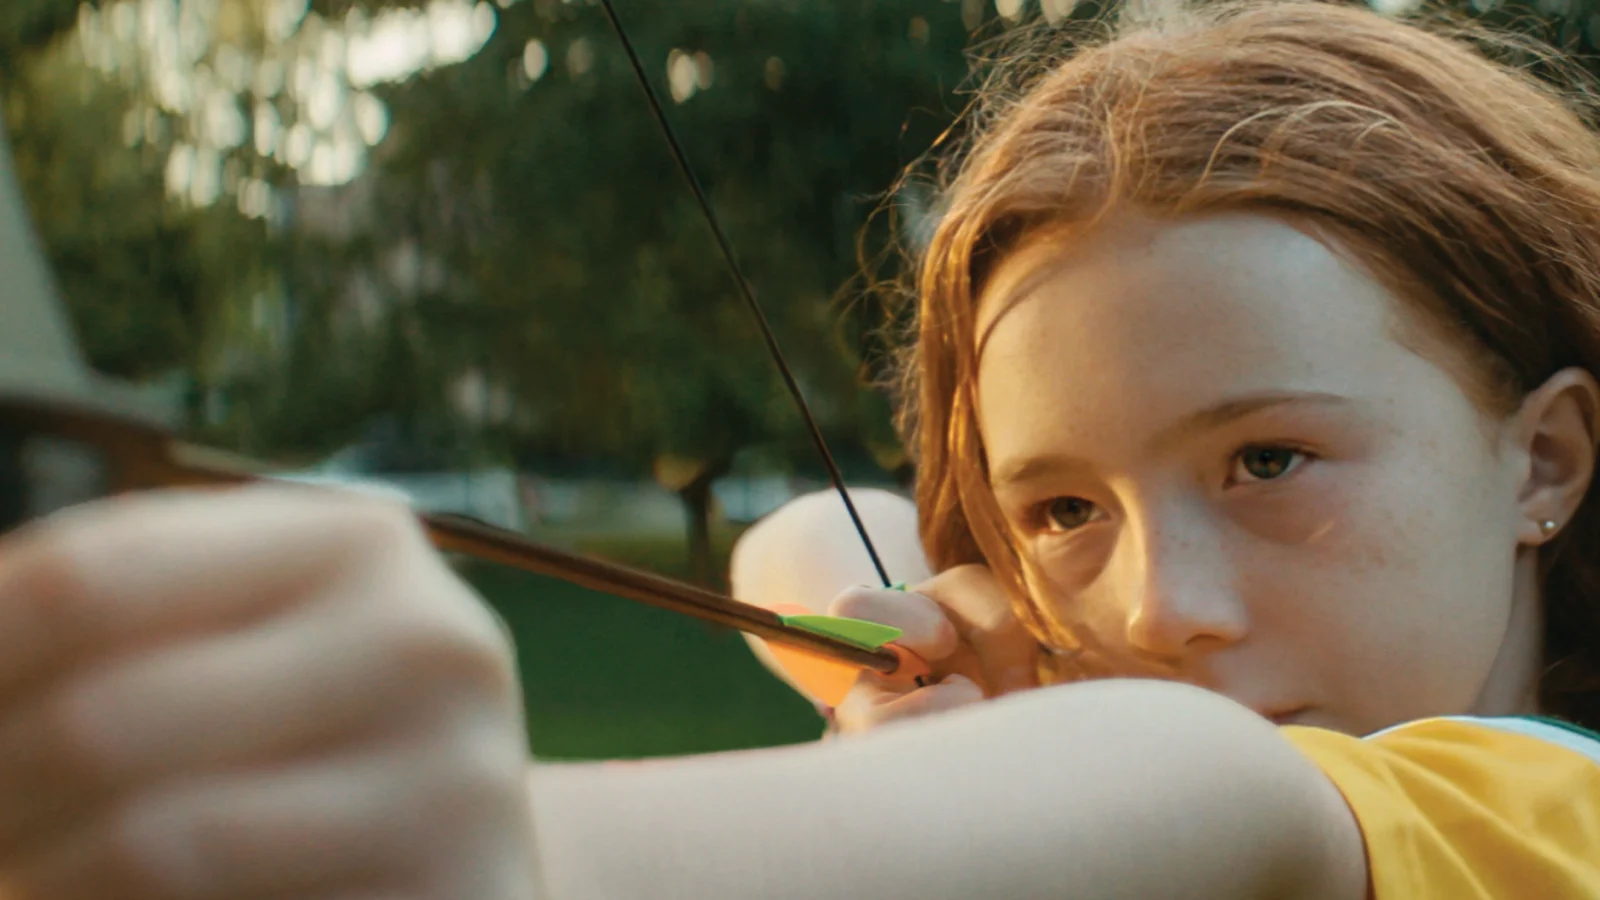 Girl aiming an arrow